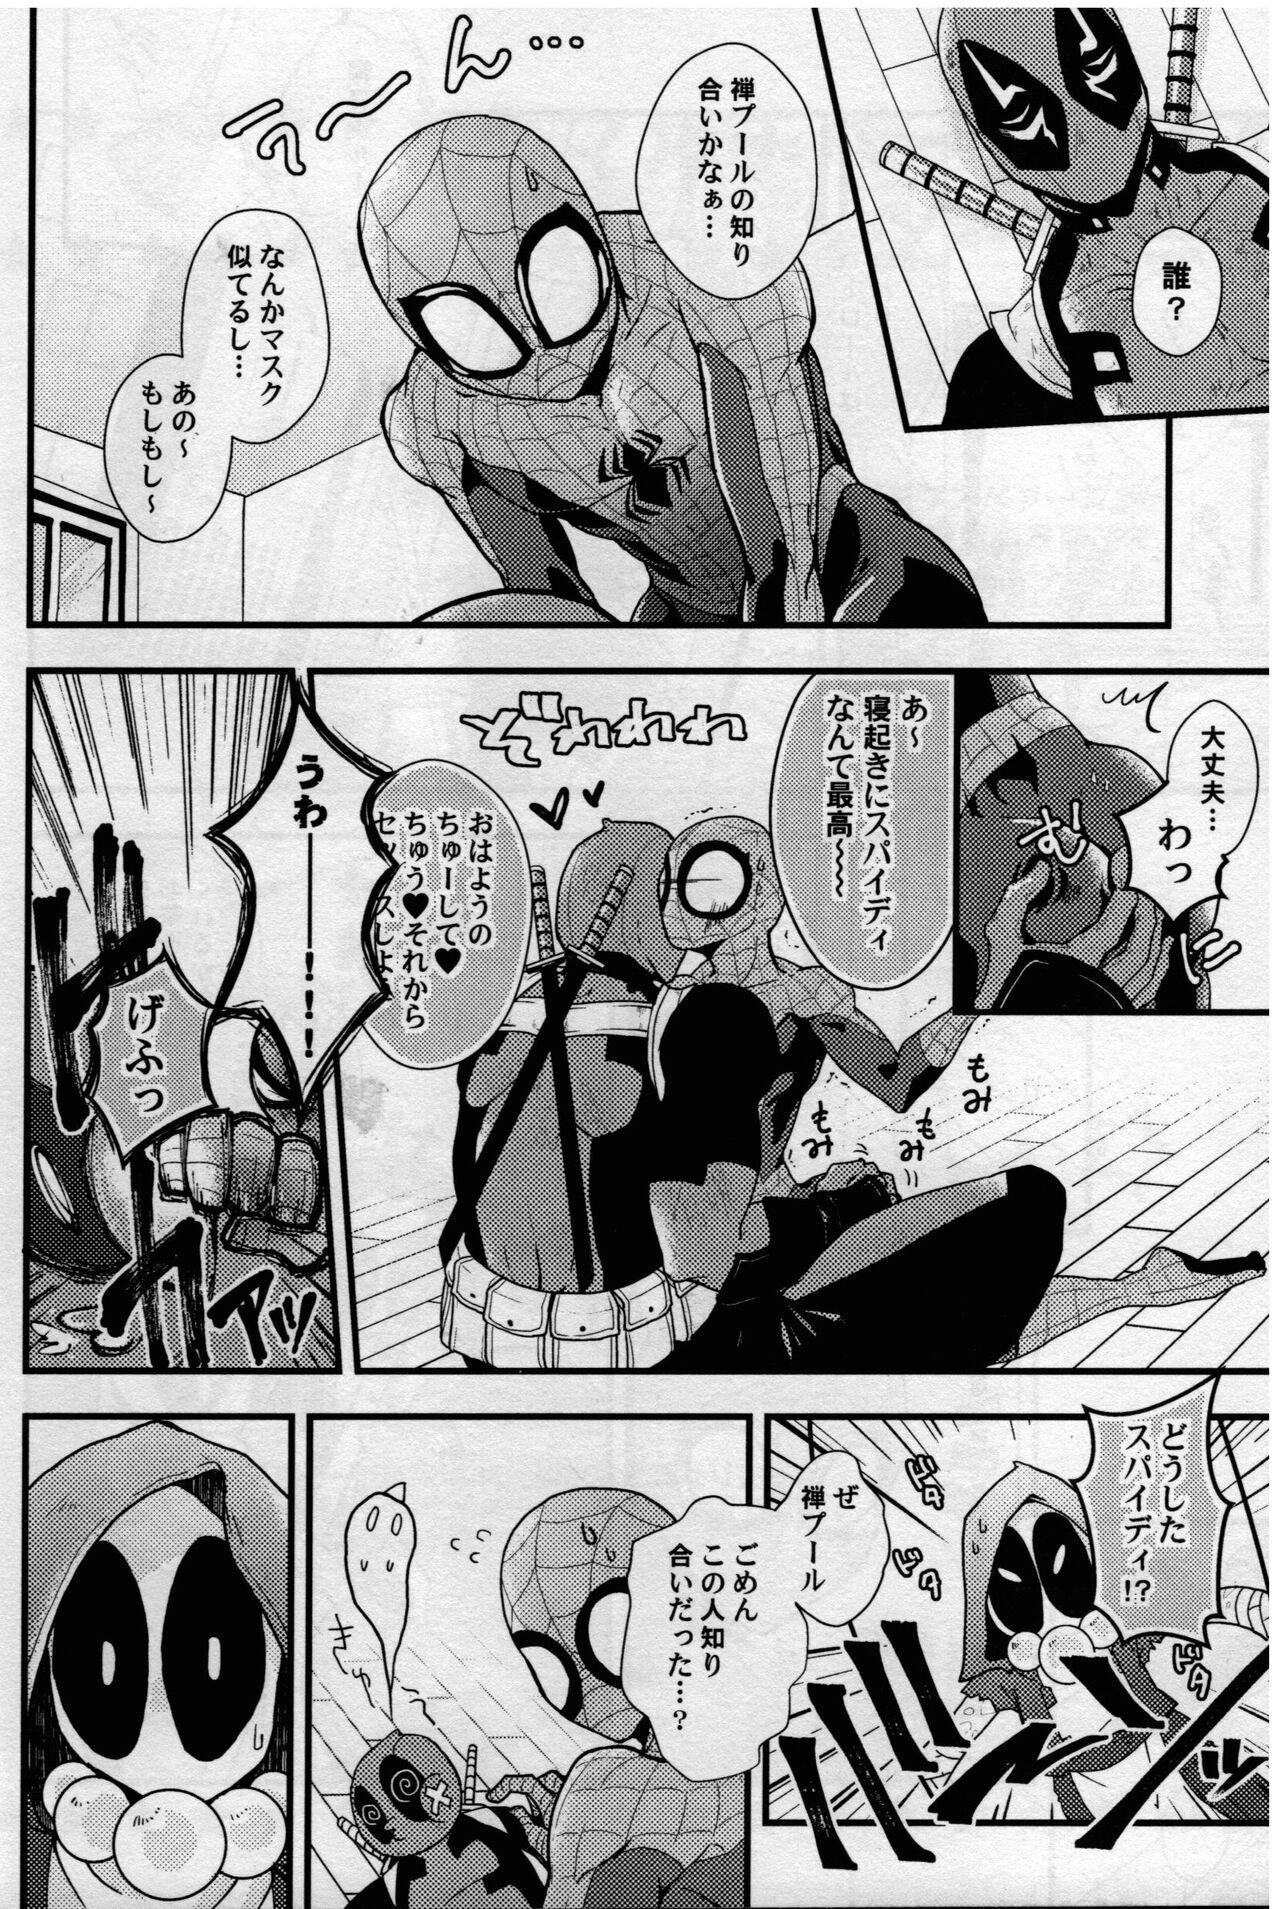 Cuckold maruchiba → suraba → zu maruchibasurabazu - Spider man Best Blow Job - Page 5